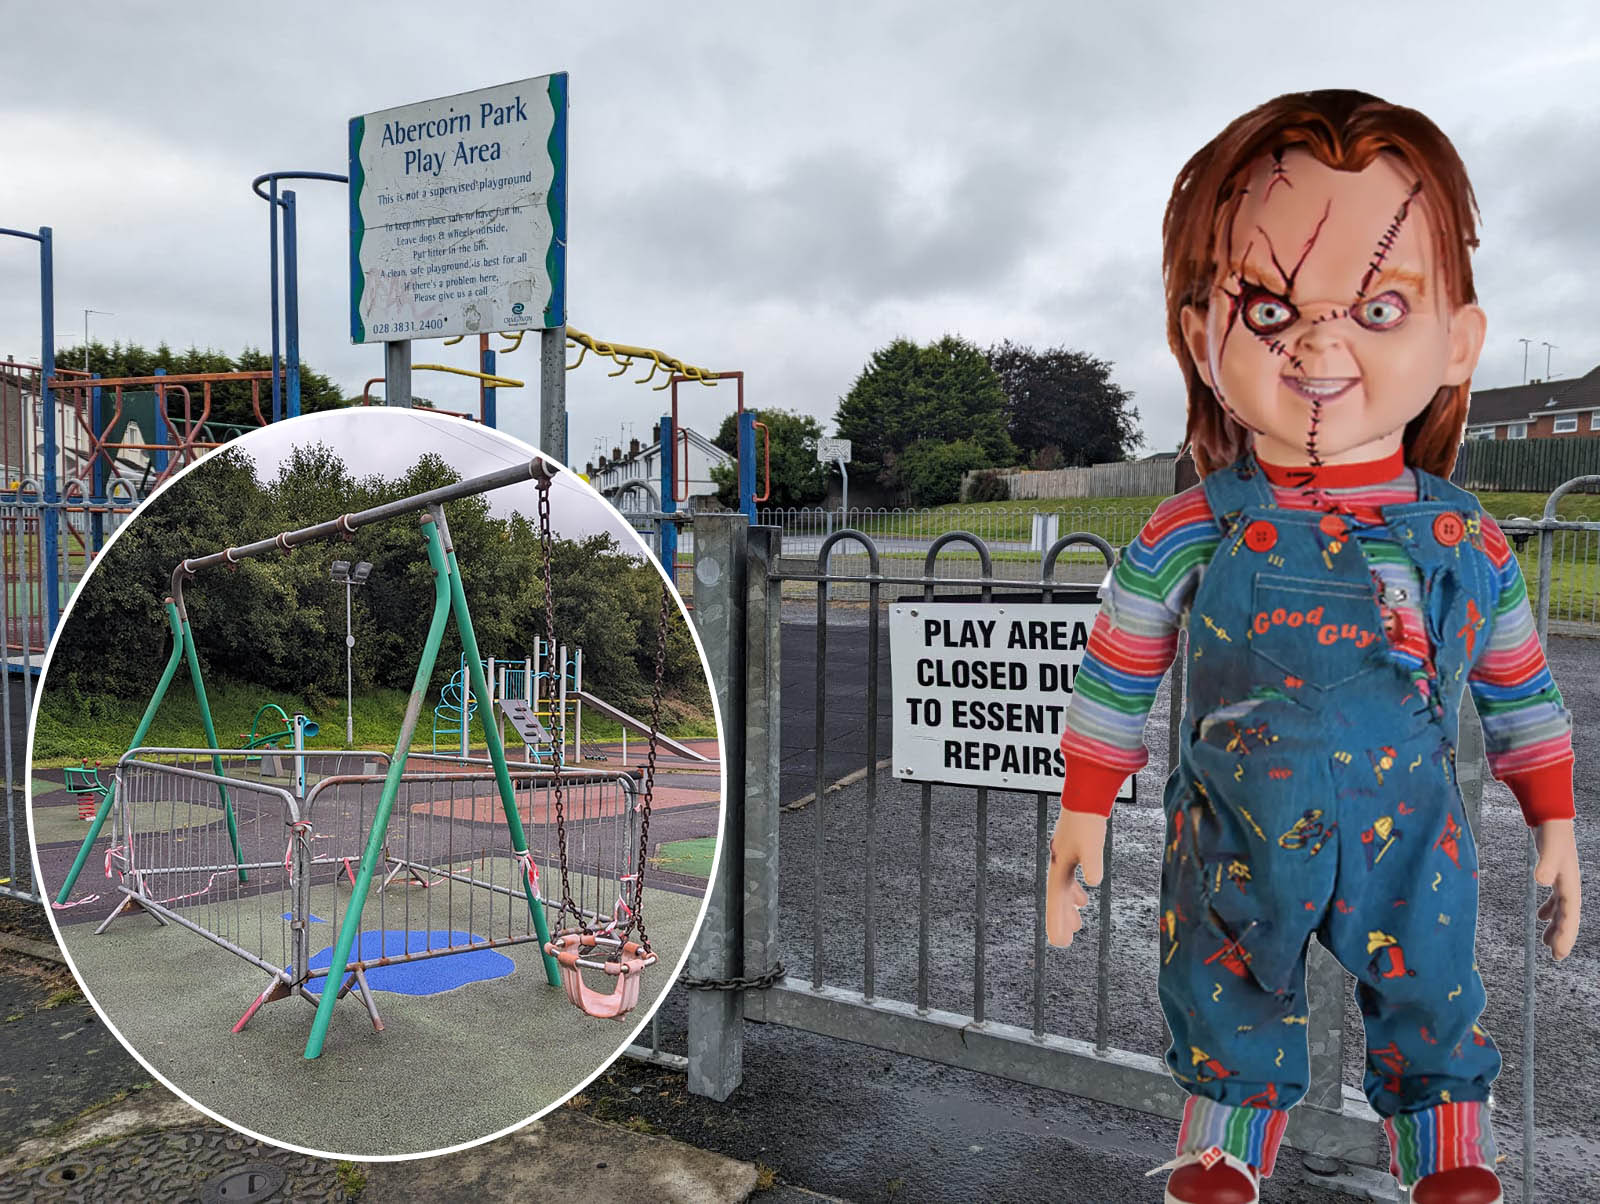 Chucky play parks